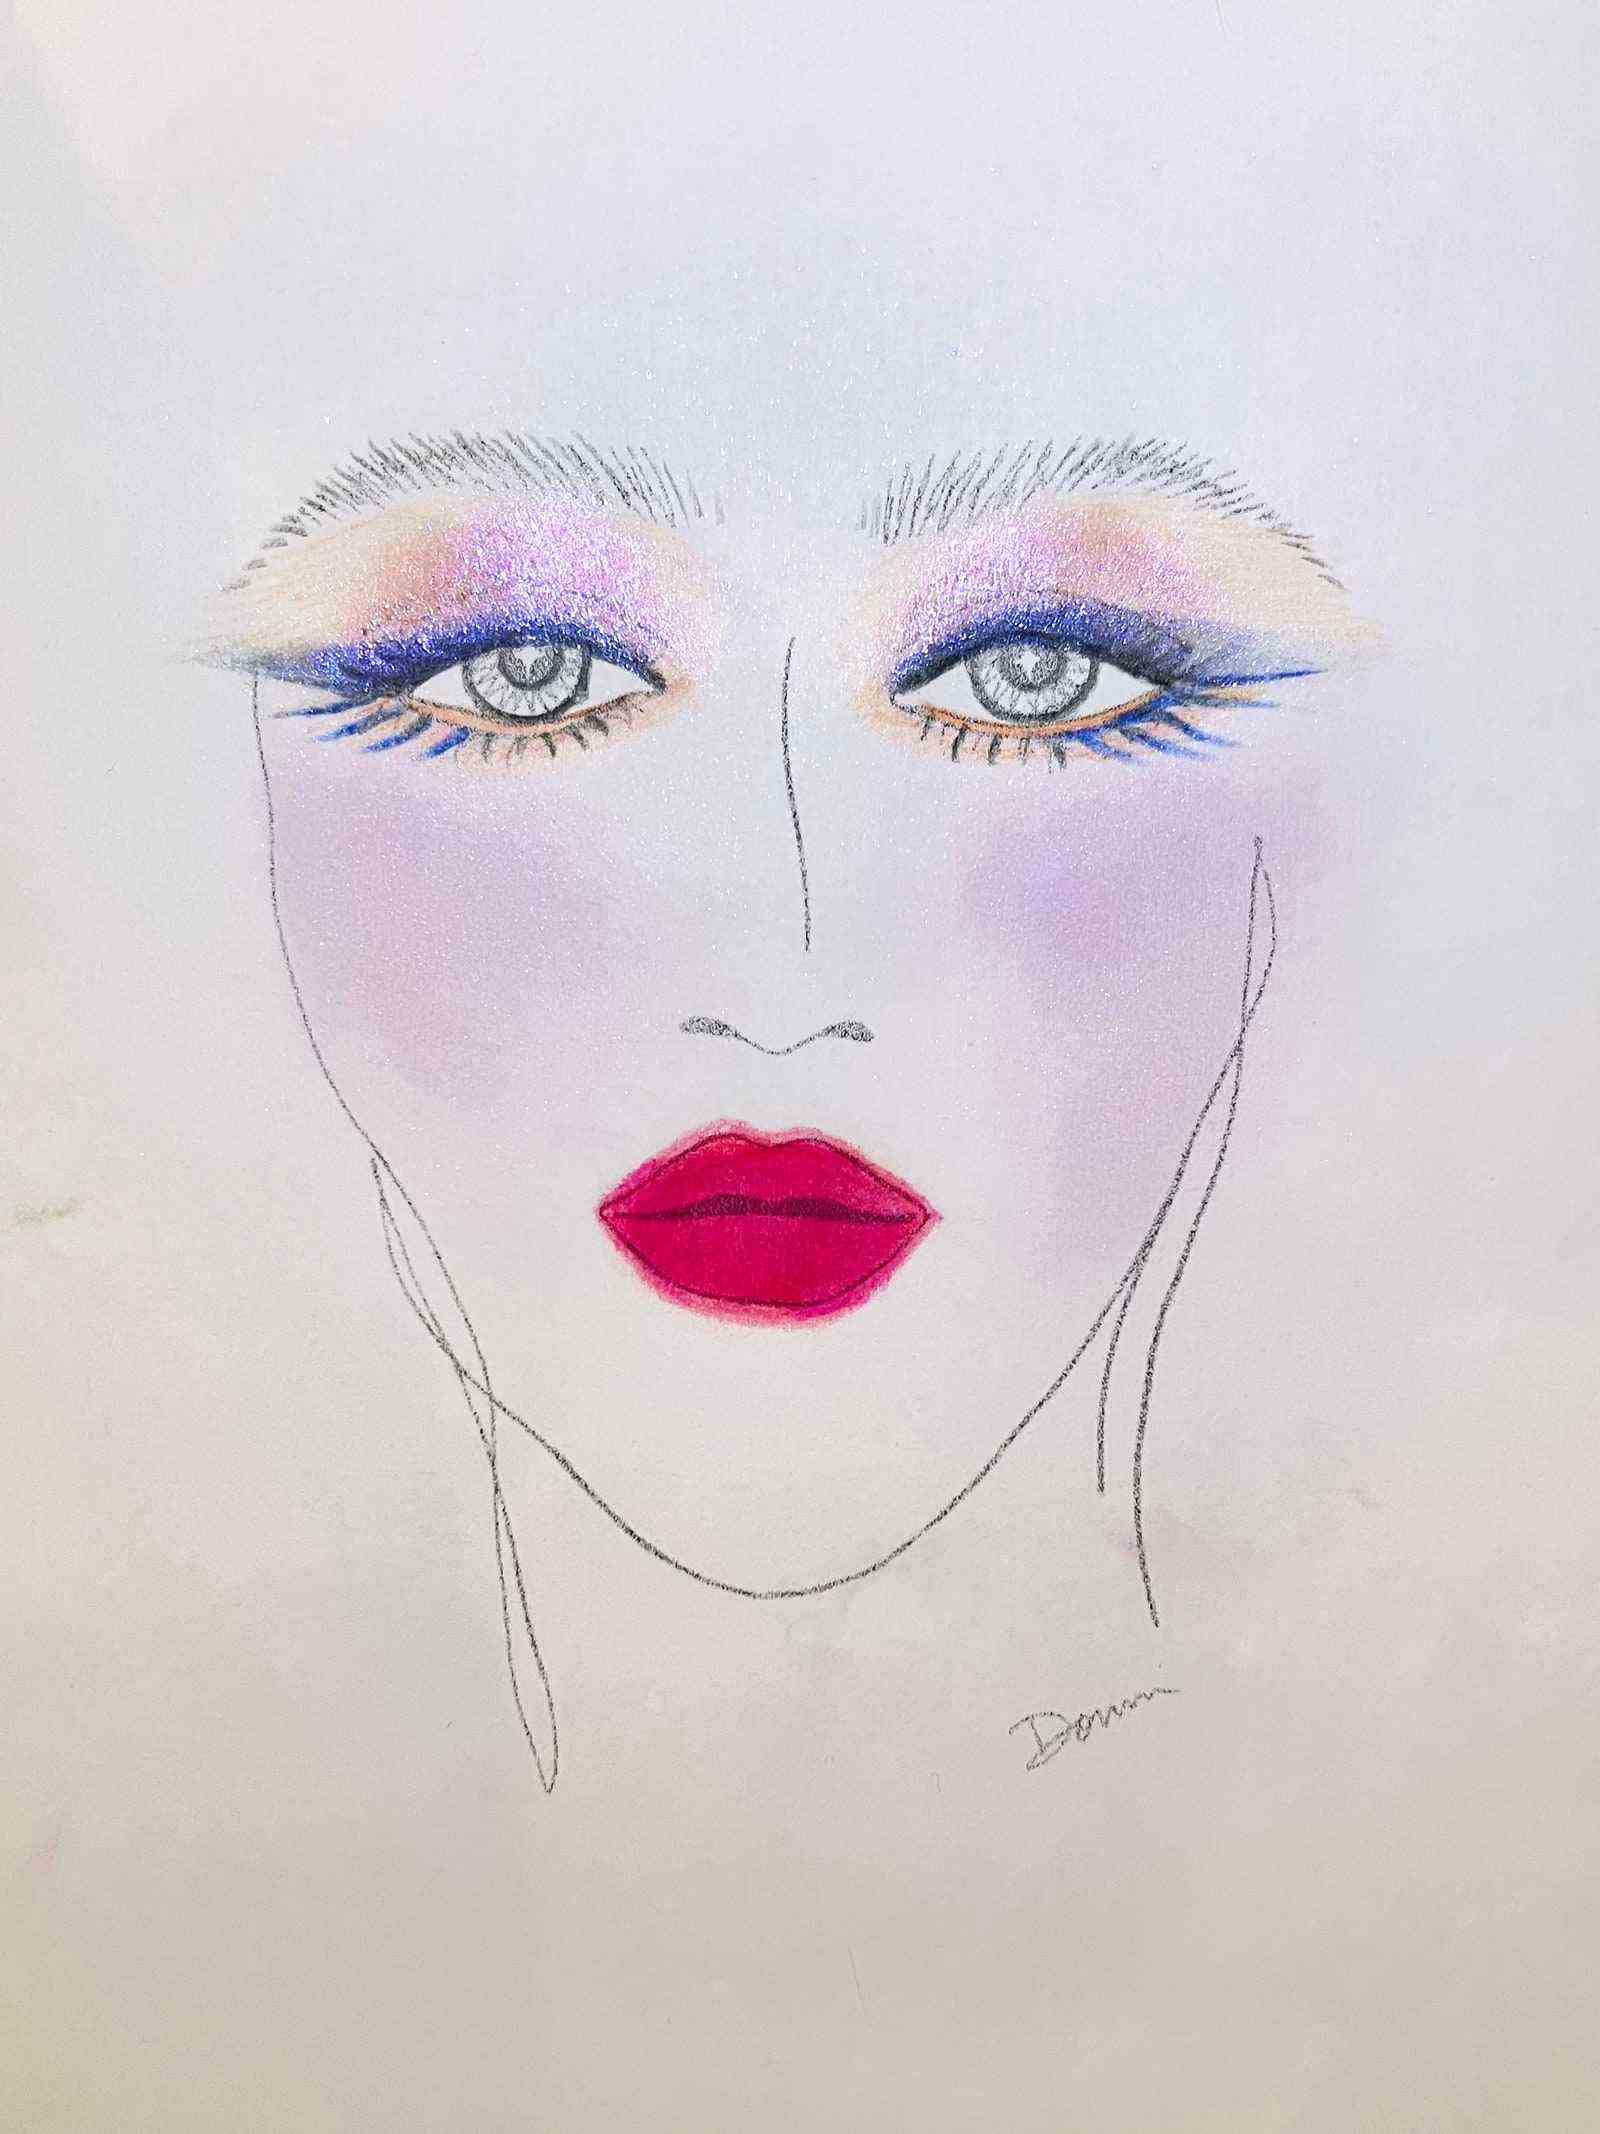 Gesichtsdiagramm des Gesichts mit schimmerndem rosa und blauem Eyeliner und Lidschatten und rosarotem Lippenstift